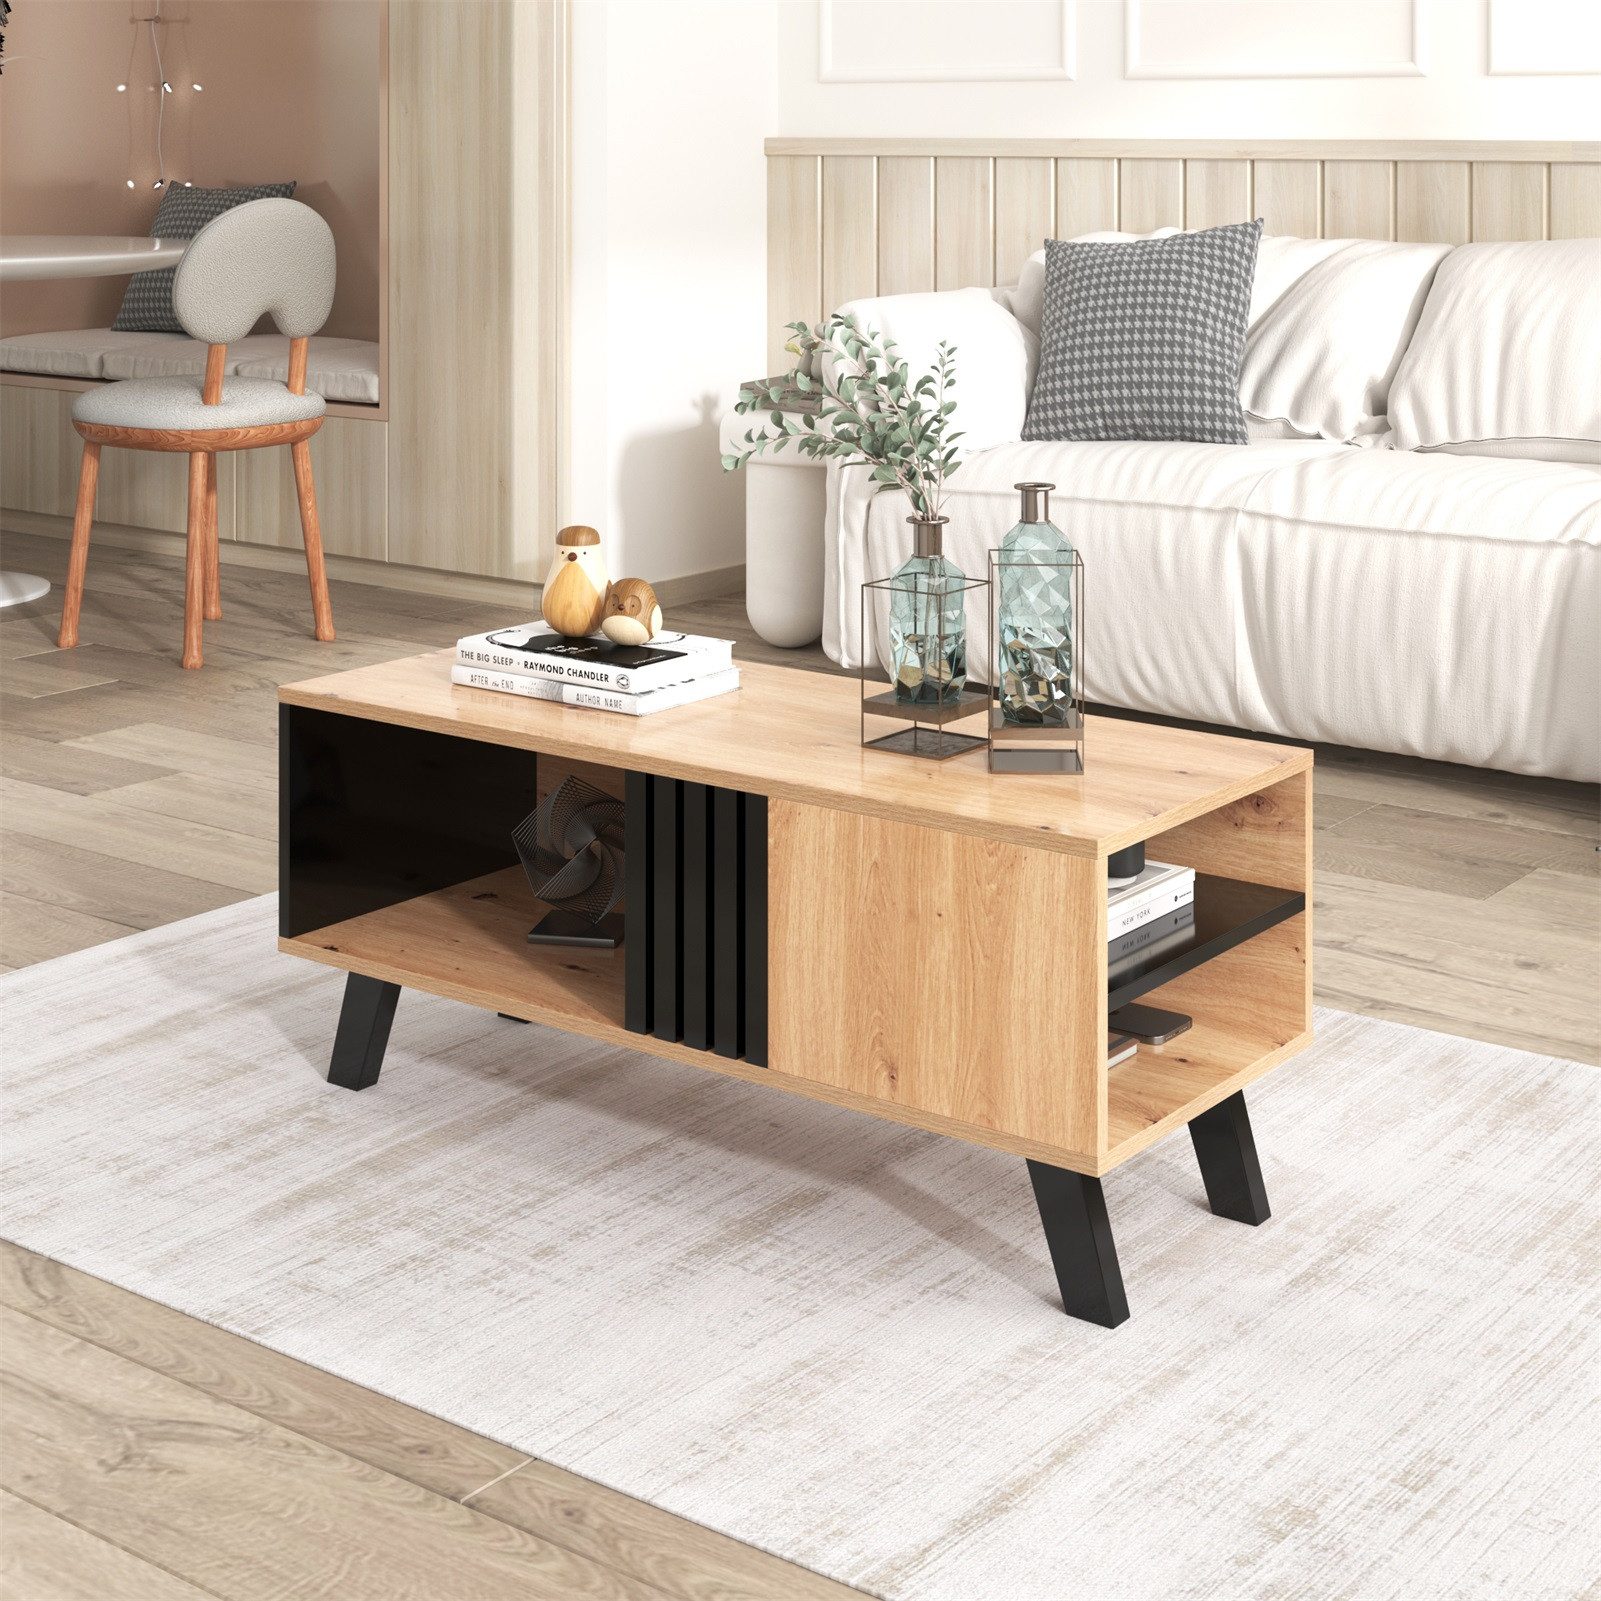 Rutaqian Beistelltisch Couchtisch mit Schublade, Sofatisch für Wohnzimmer, 100 x 60 x 53 cm (Wohnzimmer Tisch für Couch aus hochwertigem Holzwerkstoff), moderner Couchtisch mit zusätzlicher Ablagefläche